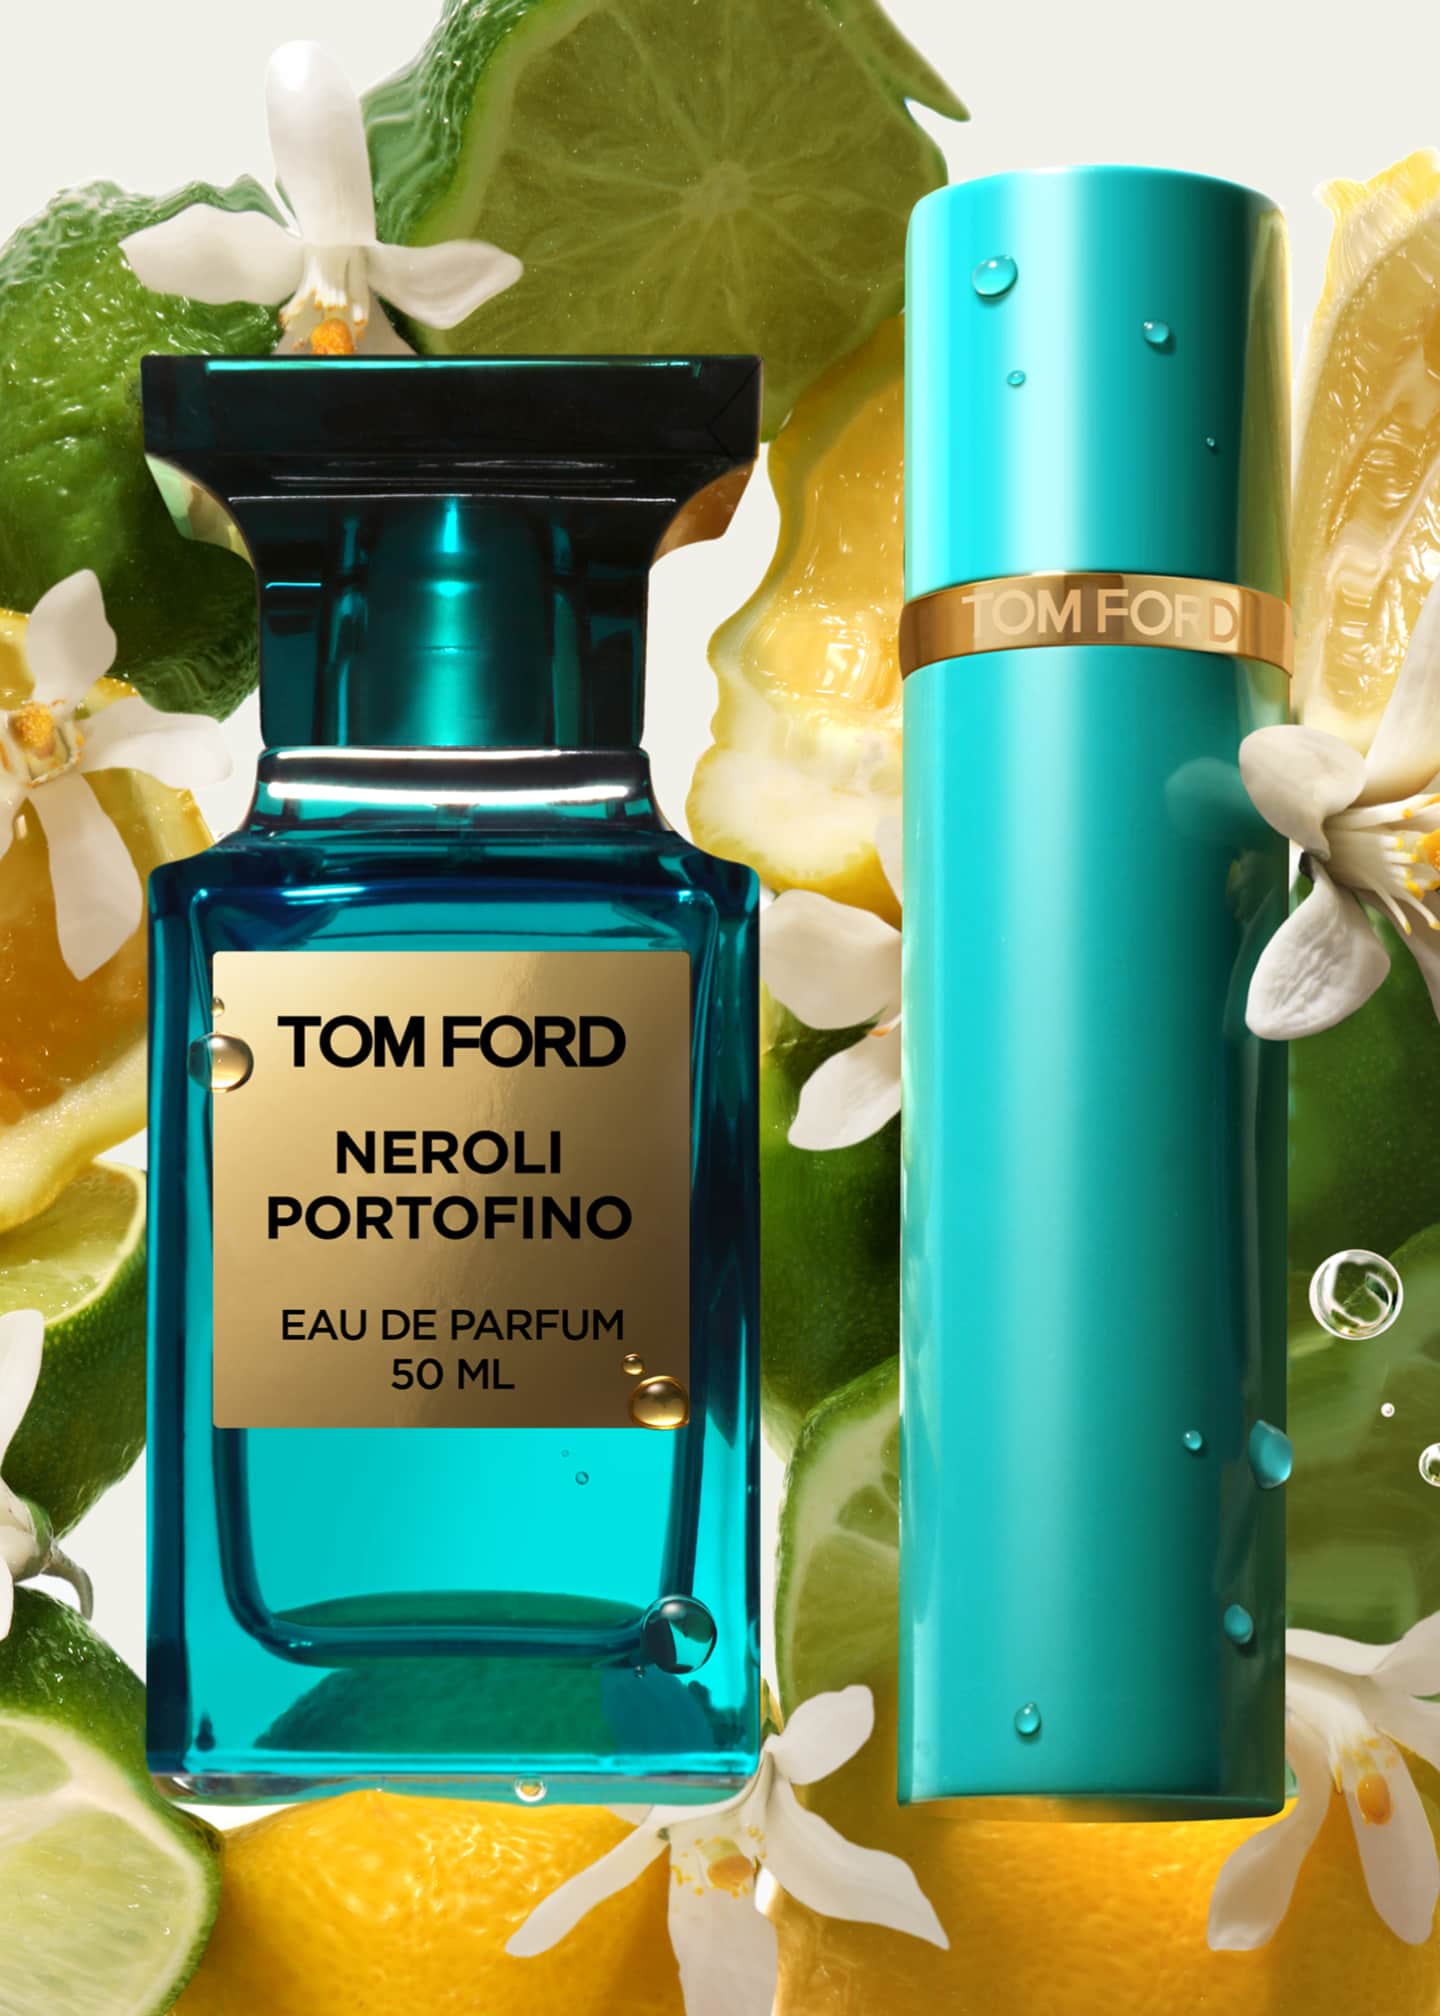 TOM FORD Neroli Portofino Eau de Parfum Fragrance Travel Spray ...